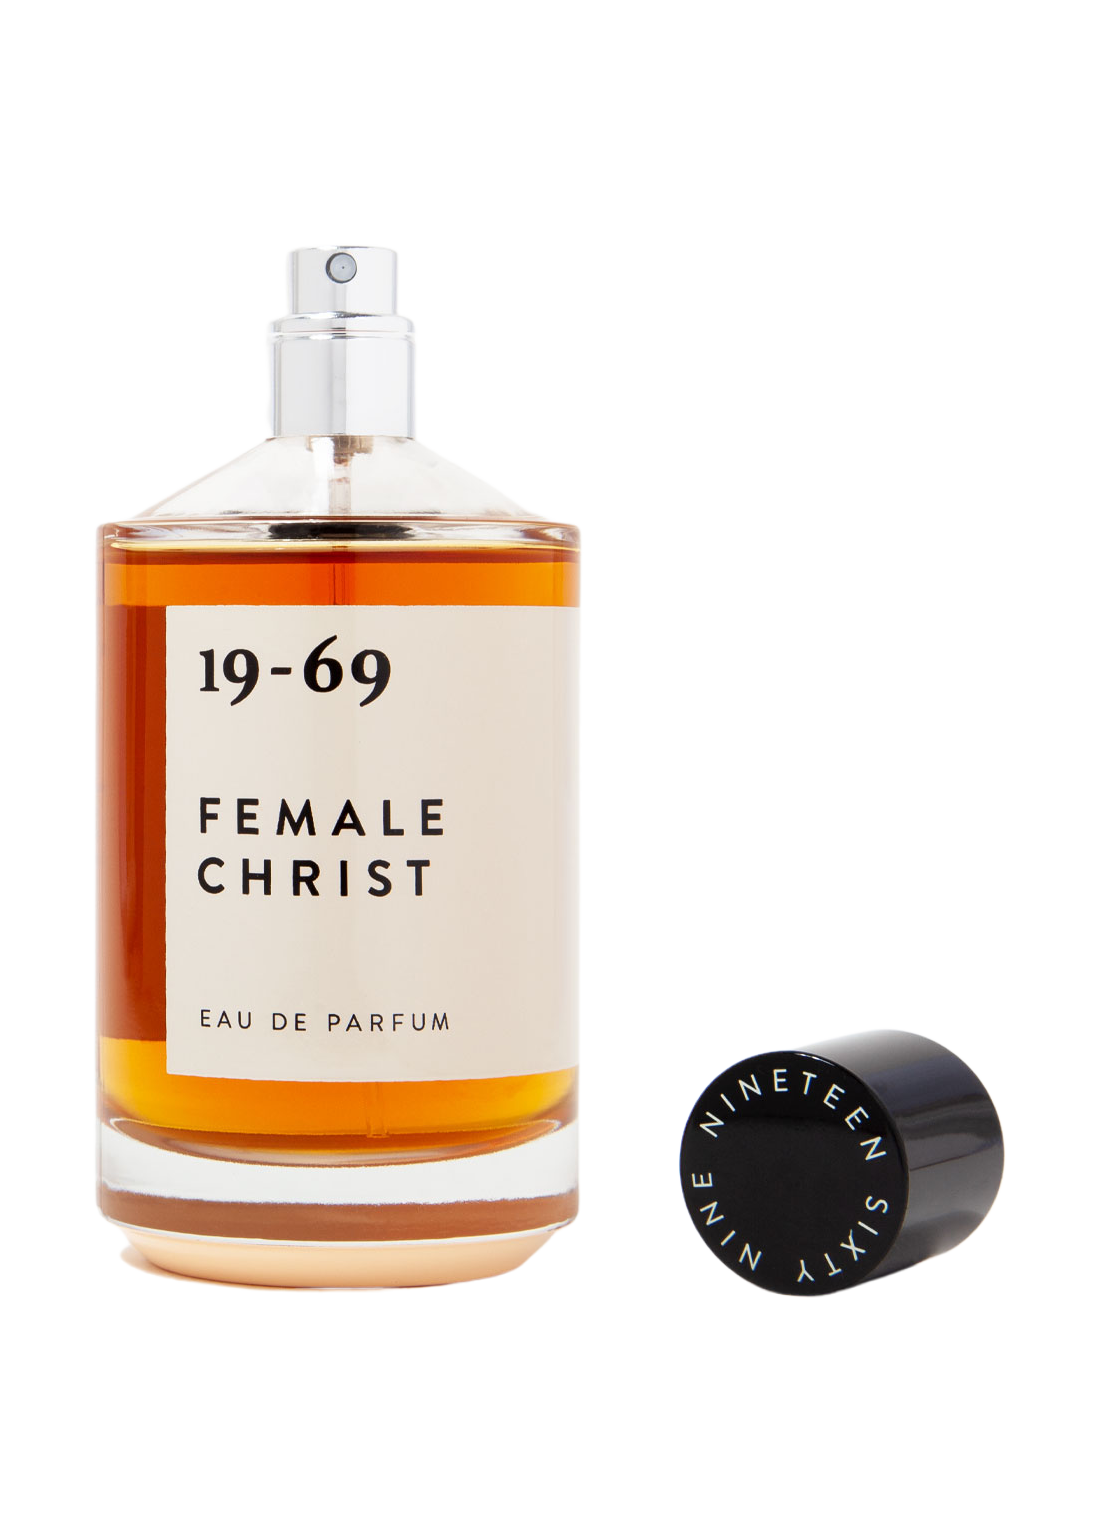 19-69 Fragrance in Female Christ